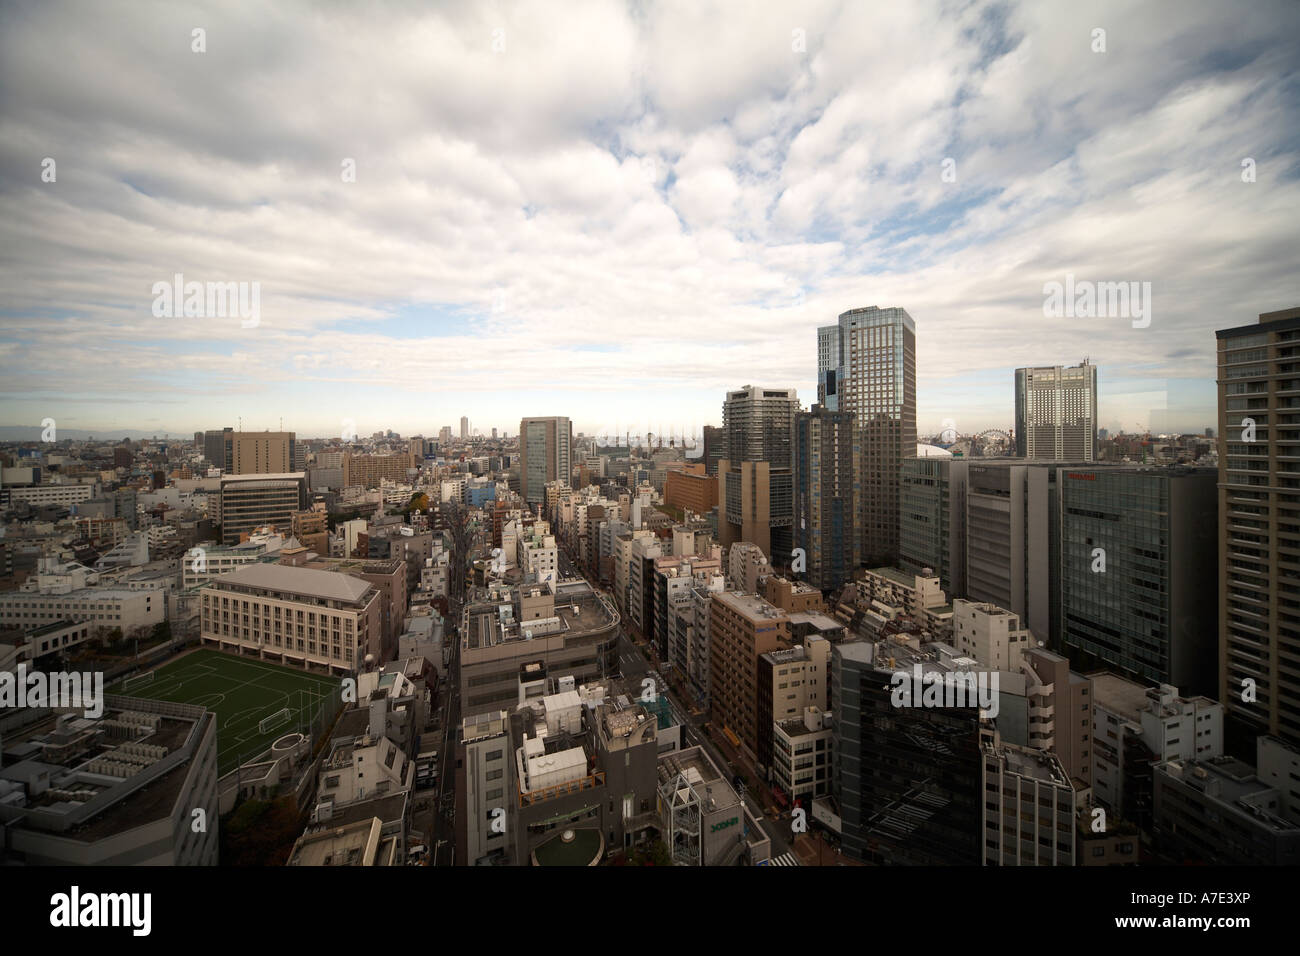 Alto livello semi obliquo vista aerea a nord-est di edifici per uffici e strade da Hotel Grand Palace nella città di Tokyo Giappone Asia Foto Stock